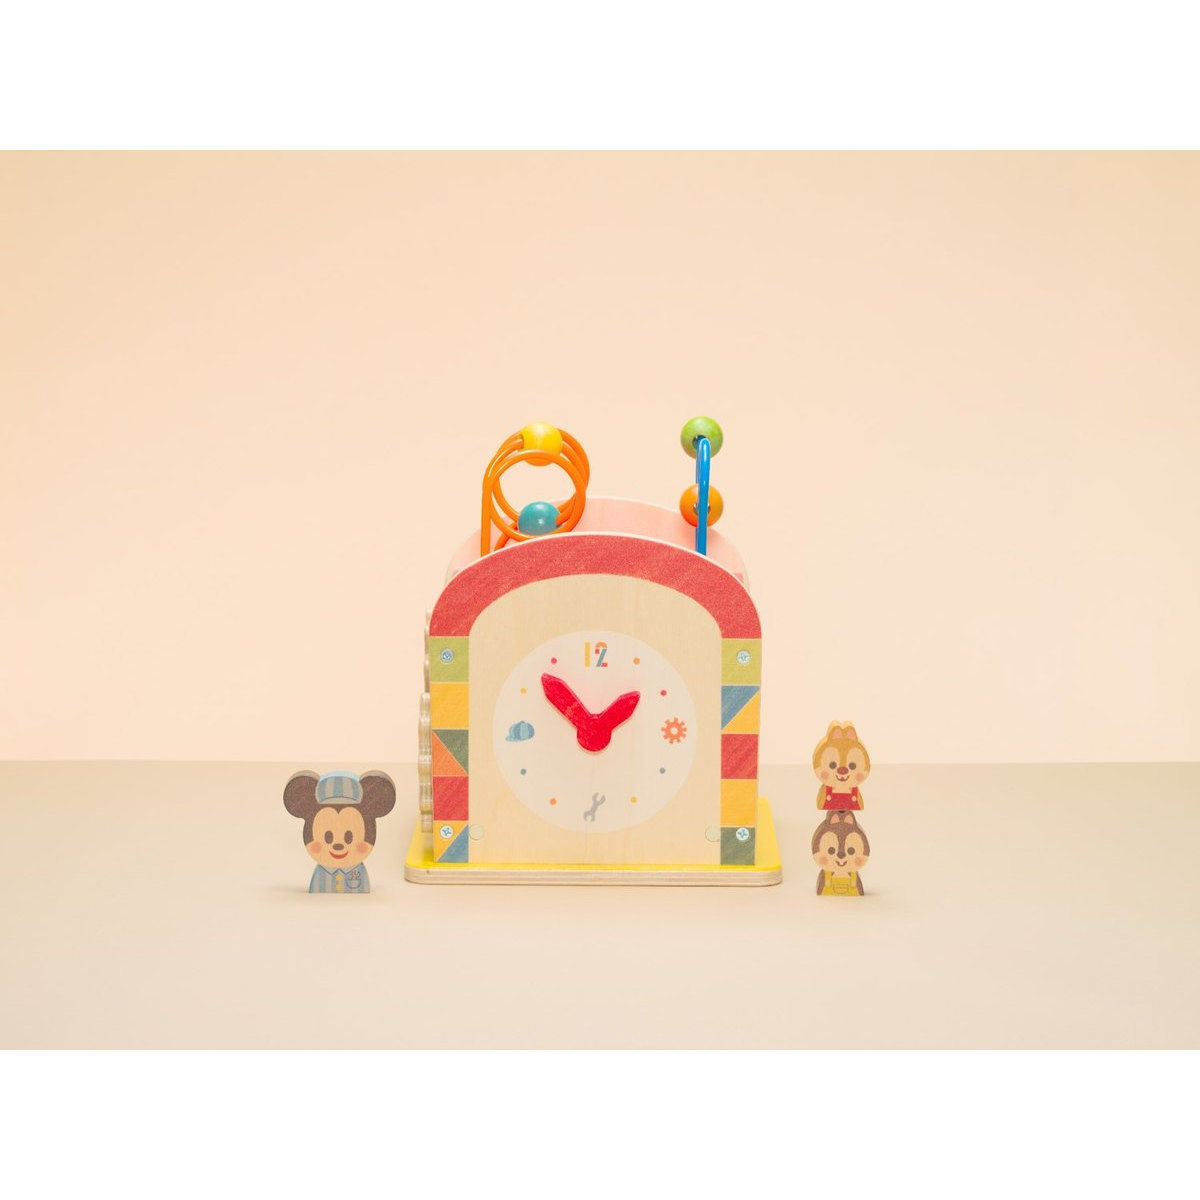 Disney Kidea Busy Box ミッキー フレンズ ディズニーキャラクター おもちゃ バンダイナムコグループ公式通販サイト